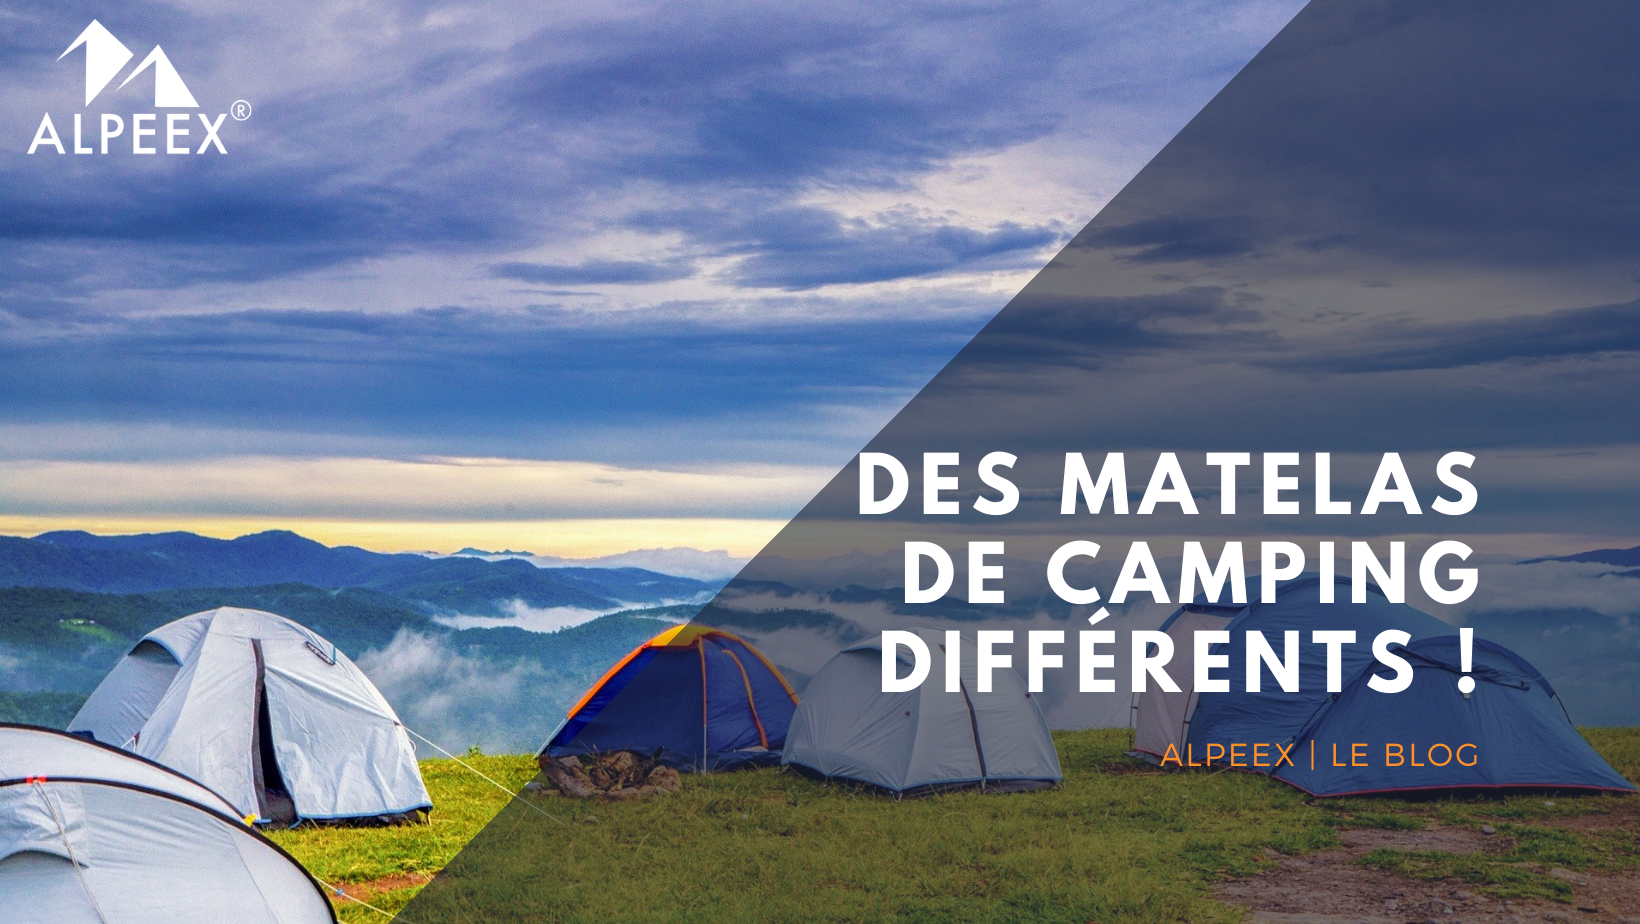 ALPEEX - Image de tente durant un camping entre amis